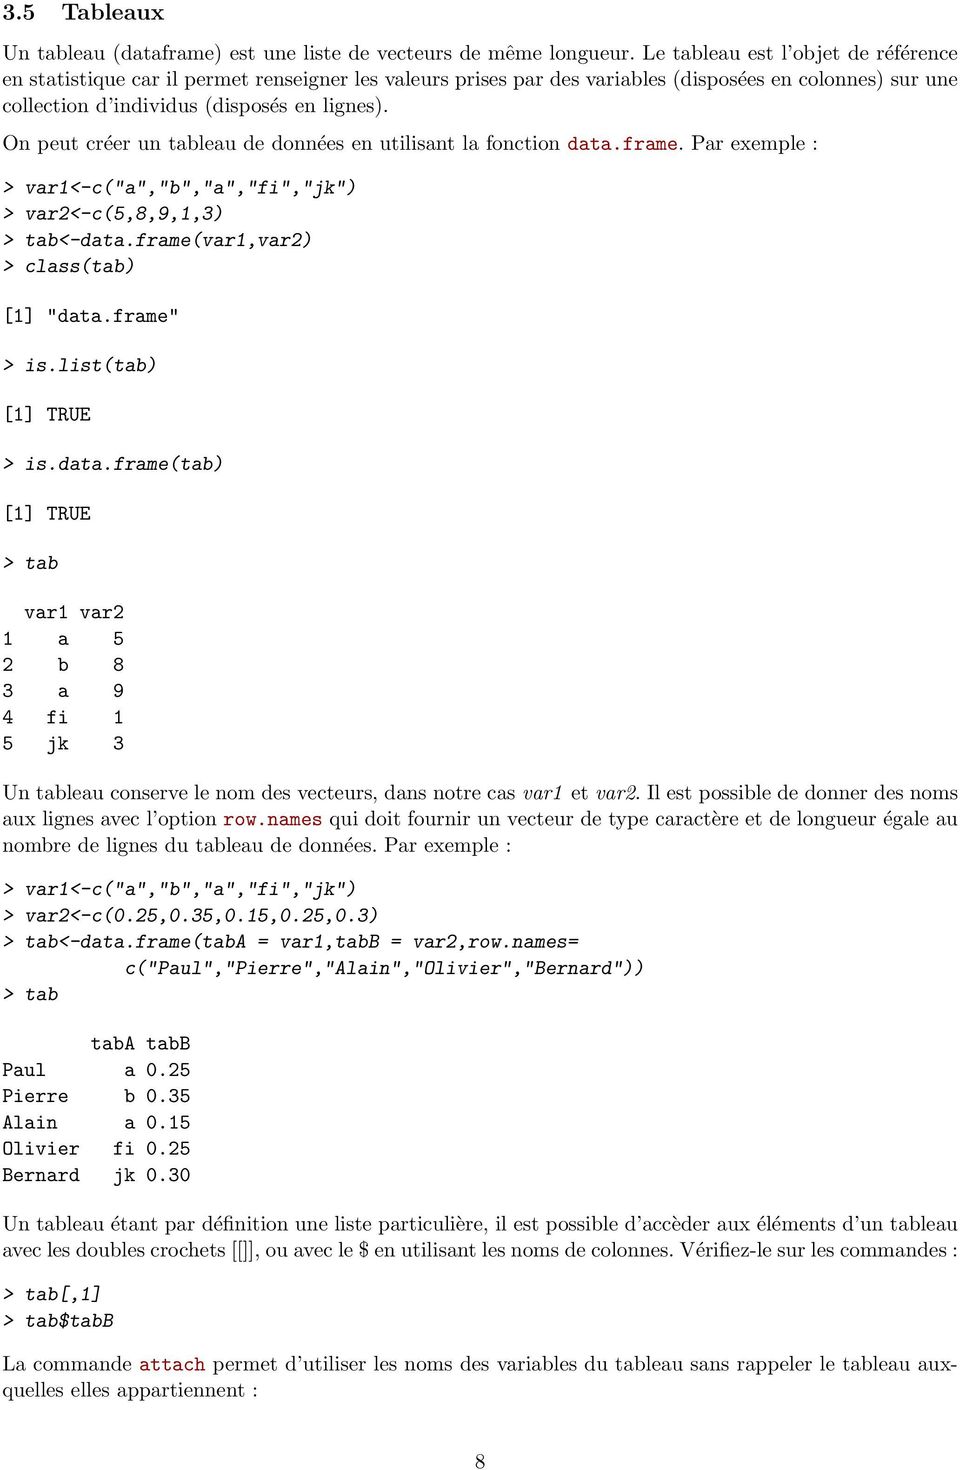 On peut créer un tableau de données en utilisant la fonction data.frame. Par exemple : > var1<-c("a","b","a","fi","jk") > var2<-c(5,8,9,1,3) > tab<-data.frame(var1,var2) > class(tab) [1] "data.